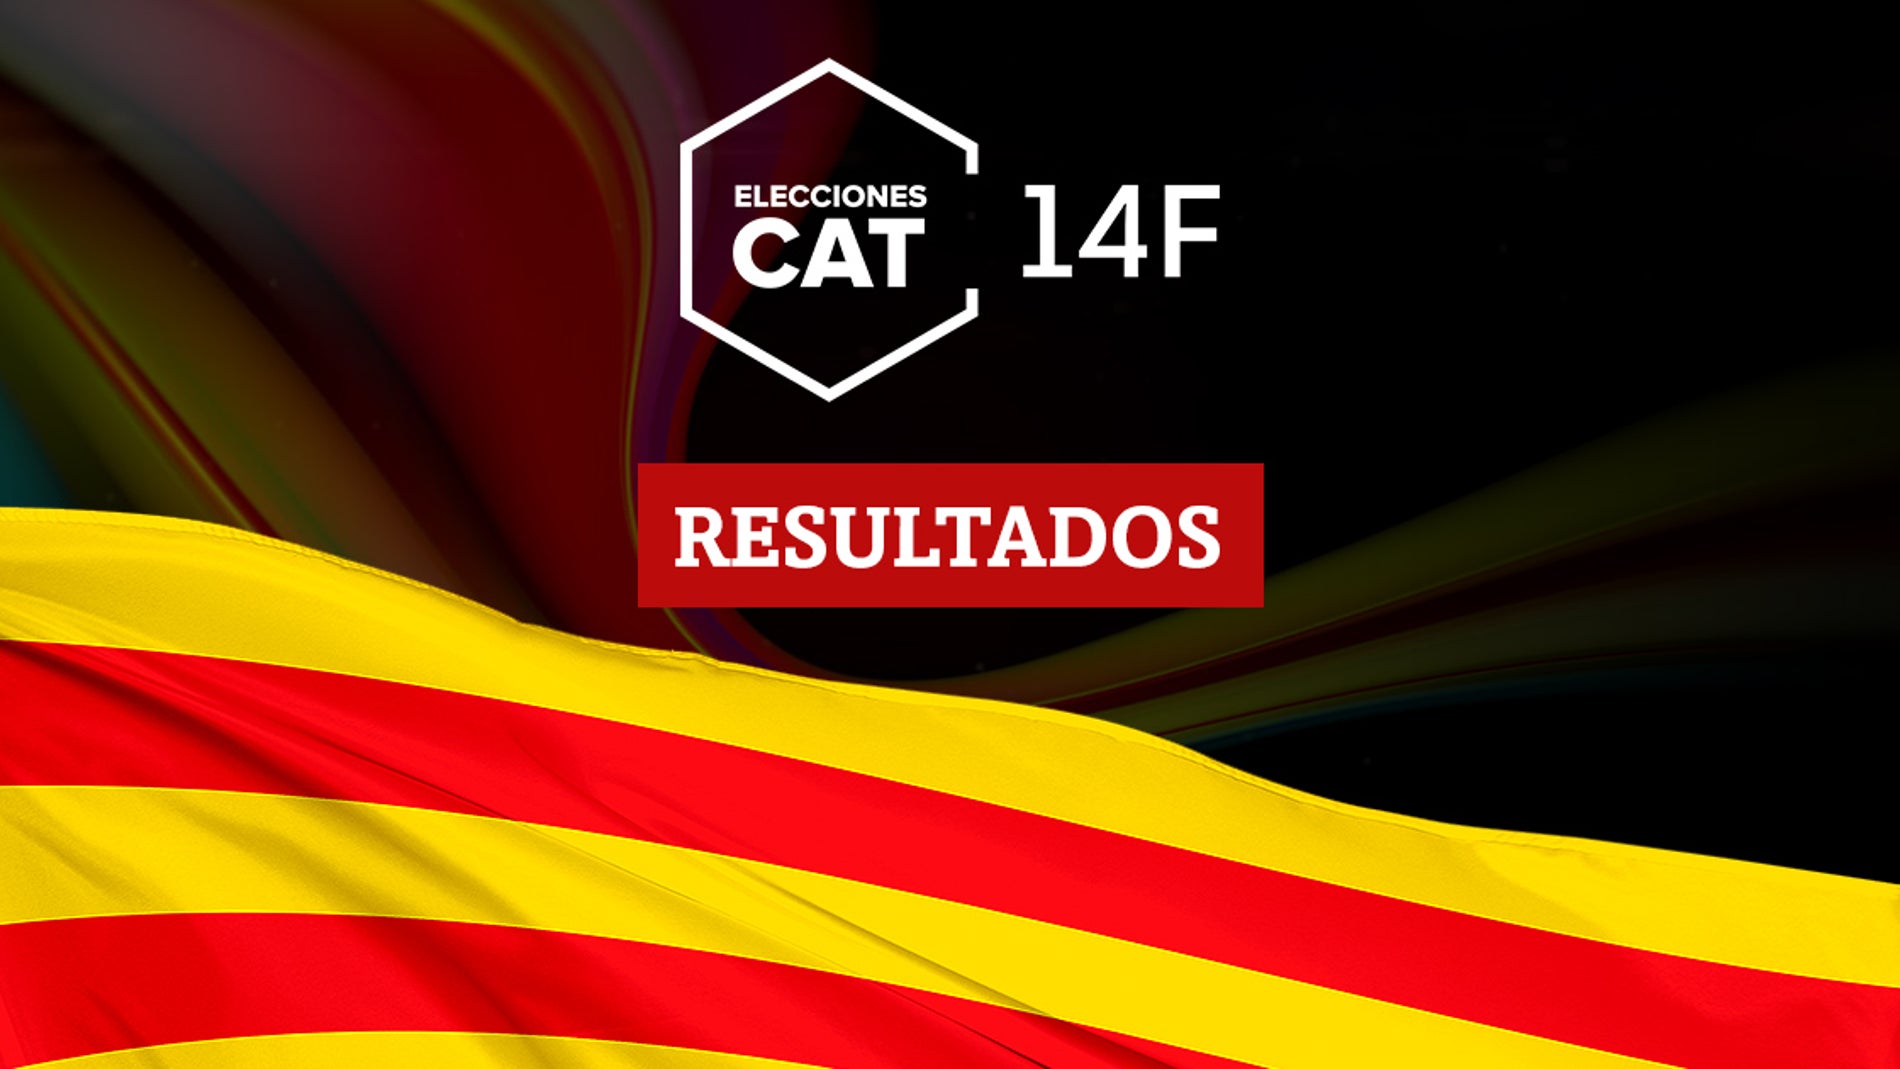 Resultados en Altafulla de las elecciones catalanas del 14F 2021